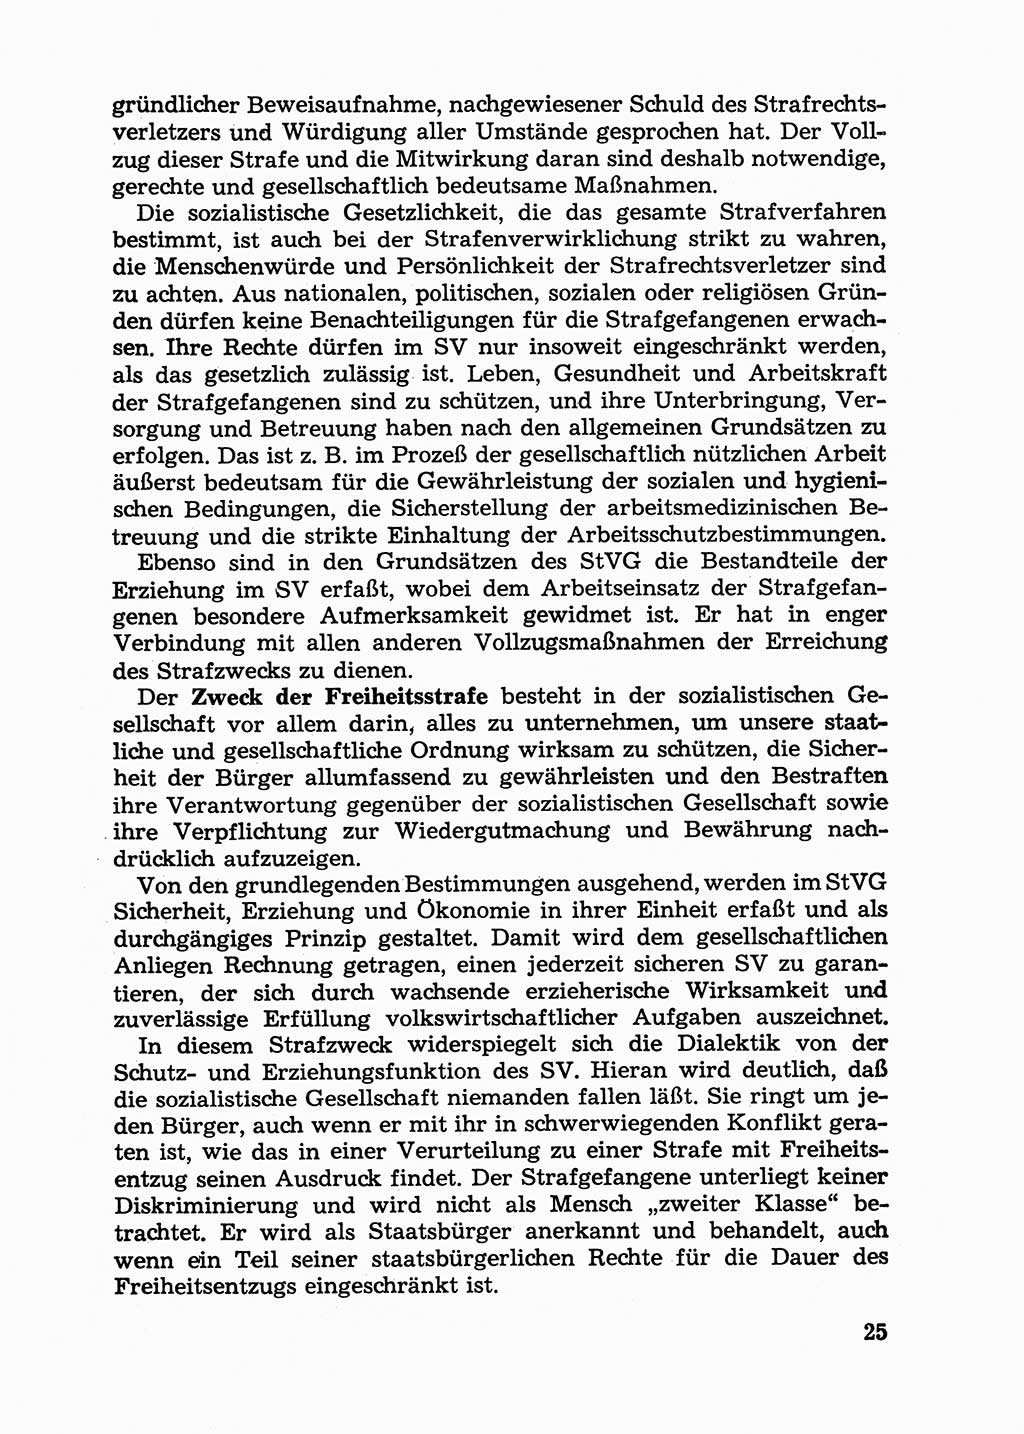 Handbuch für Betriebsangehörige, Abteilung Strafvollzug (SV) [Ministerium des Innern (MdI) Deutsche Demokratische Republik (DDR)] 1981, Seite 25 (Hb. BA Abt. SV MdI DDR 1981, S. 25)